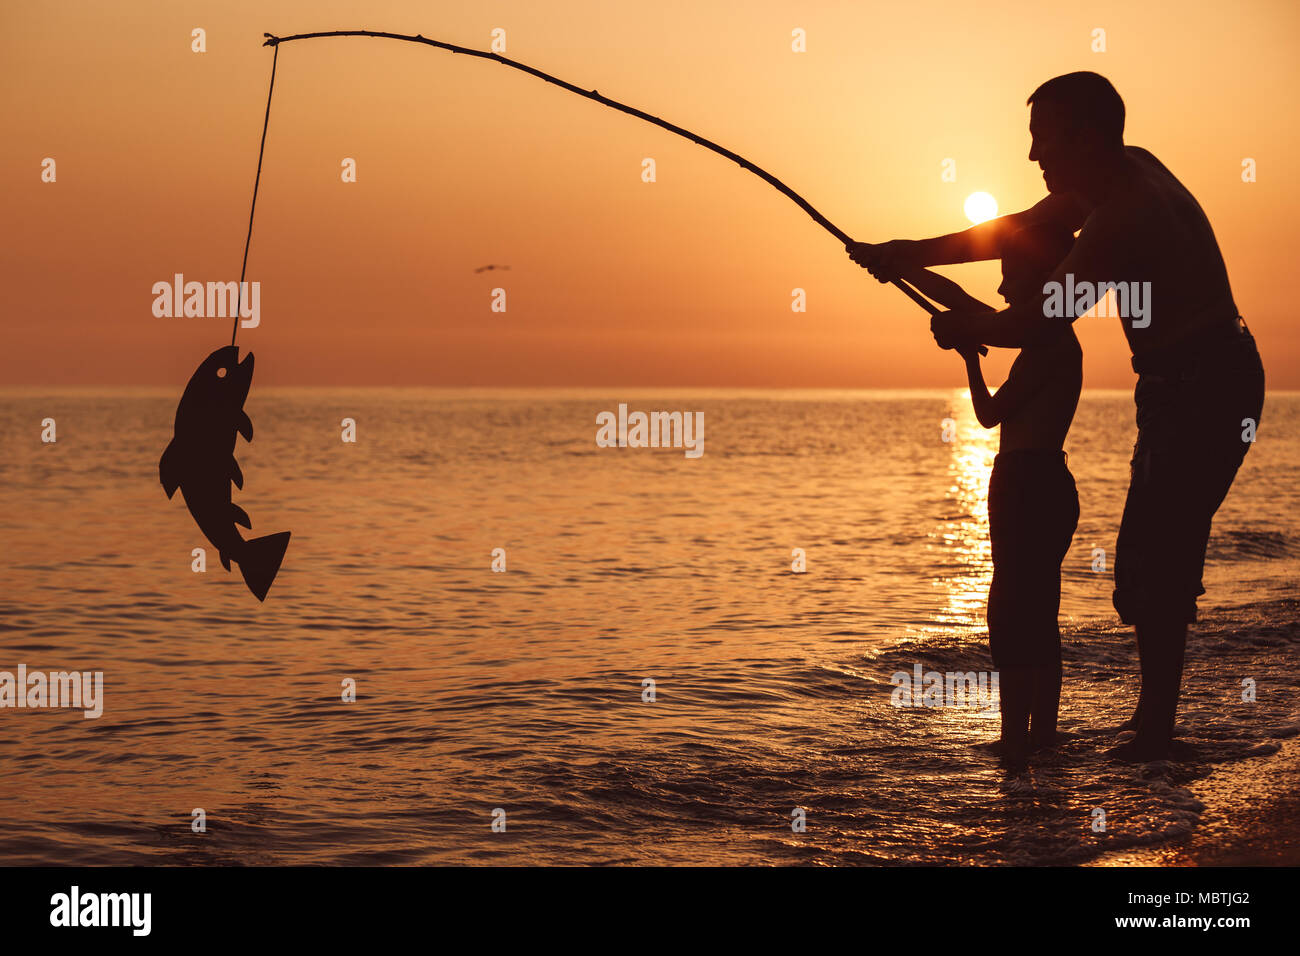 2 Pères Et 2 Fils Vont à La Pêche Père et fils de pêche sur la plage à l'heure du coucher de soleil. Ils  jouant avec un carton de poissons. Les gens s'amuser à l'extérieur. Concept  de vacances estivales et Photo